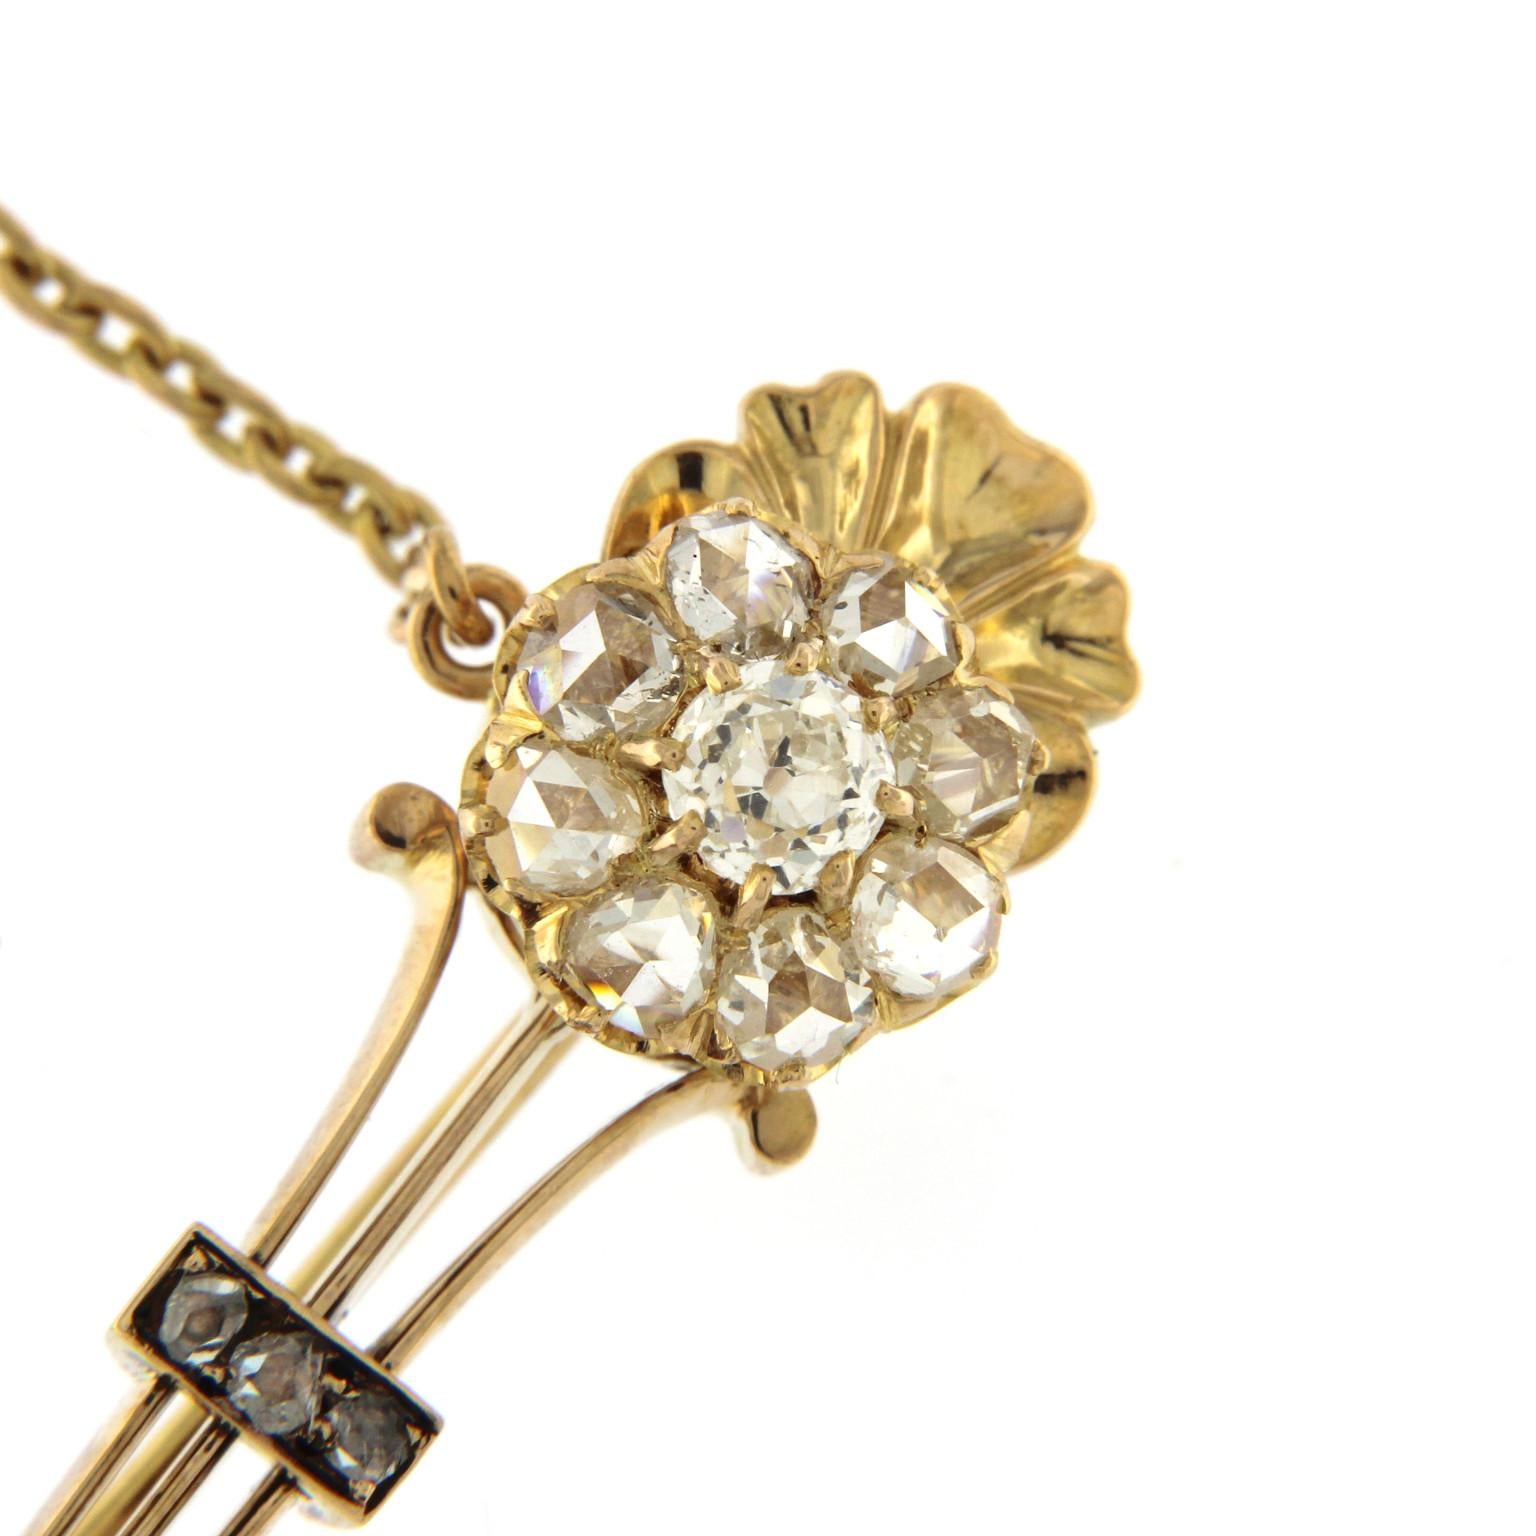 Look antique pour cette broche en or rose 18k avec une fleur composée de diamants :
un brillant central de 0,45 ct et 8 diamants taille ancienne, 5 petits diamants sur la tige.
Une chaîne pour la sécurité du loquet et une petite perle sur le